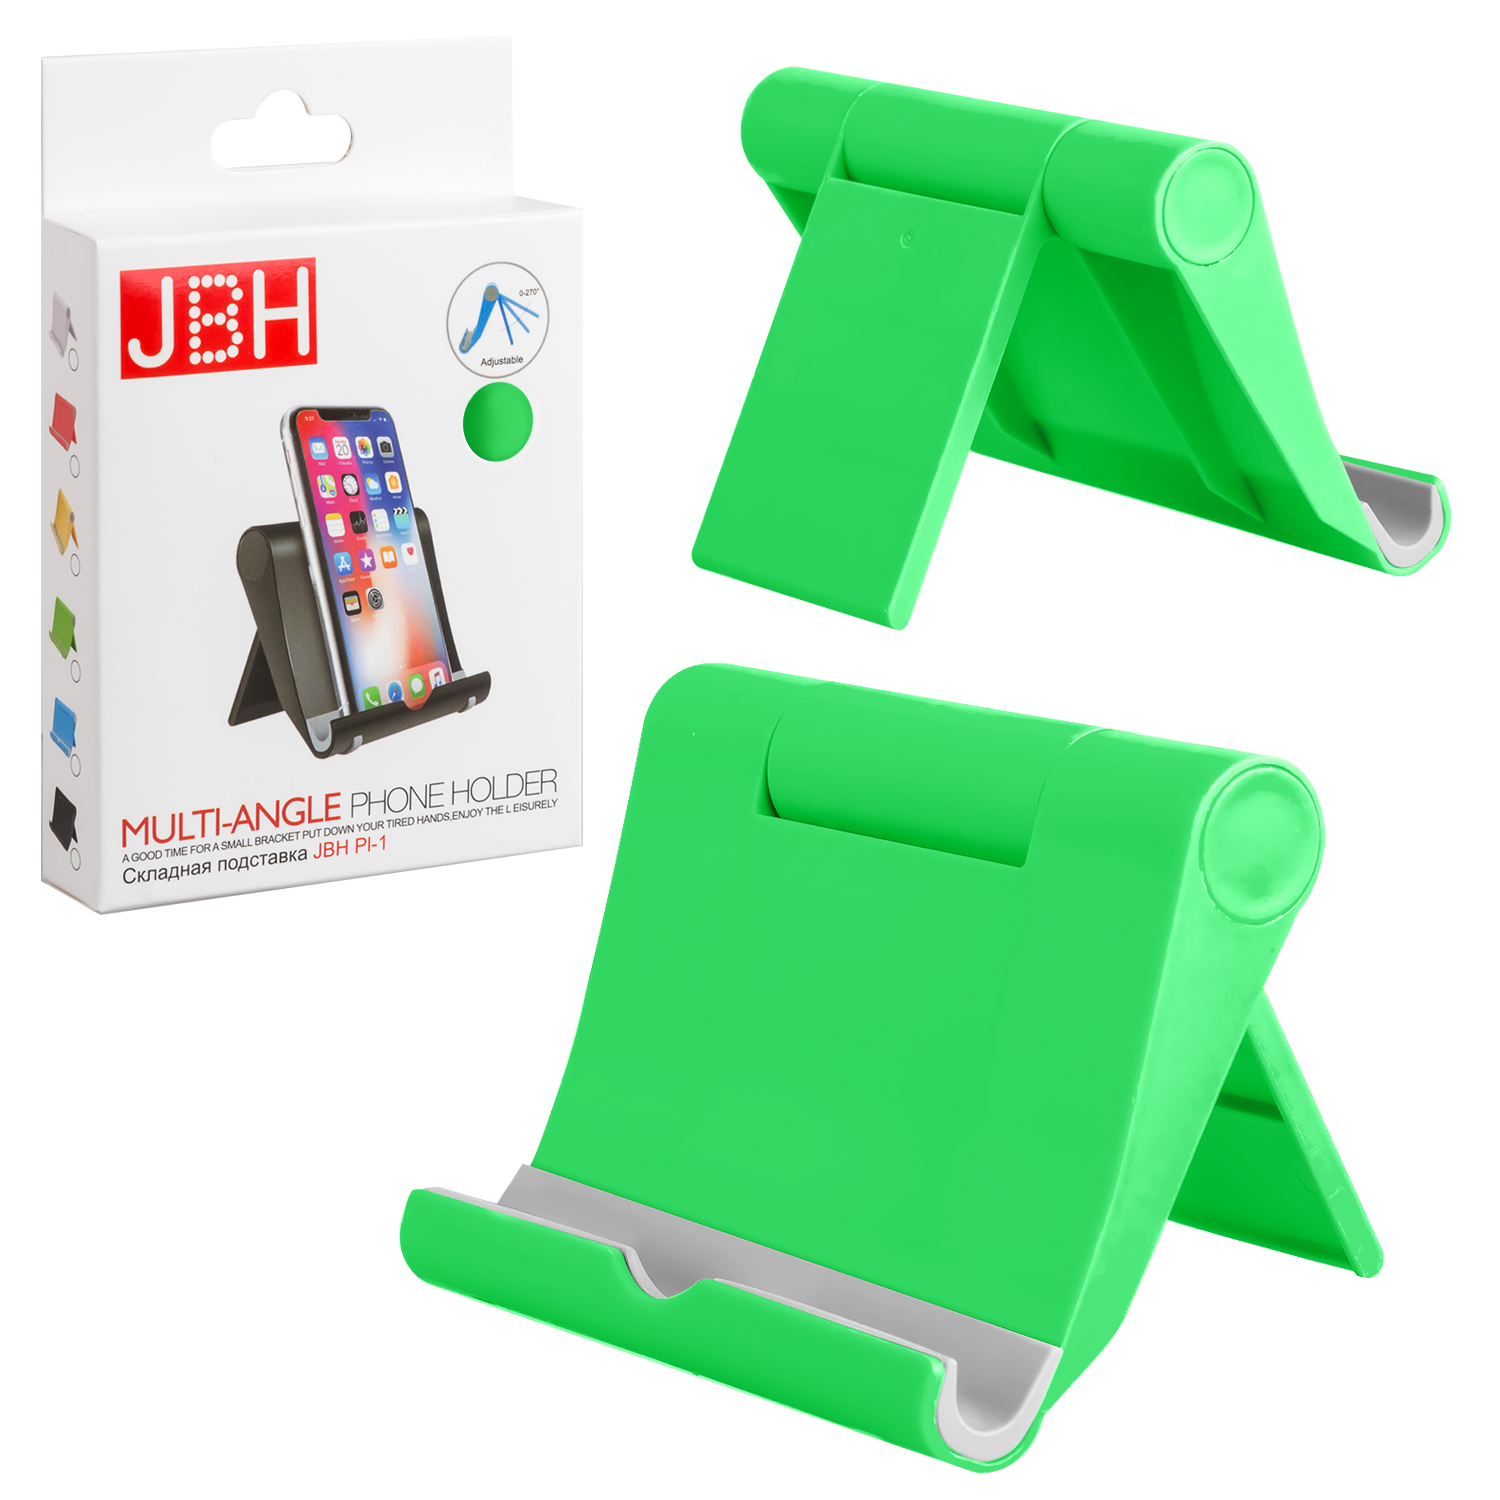 Складная подставка JBH PI-1 зеленая (350шт/кор)